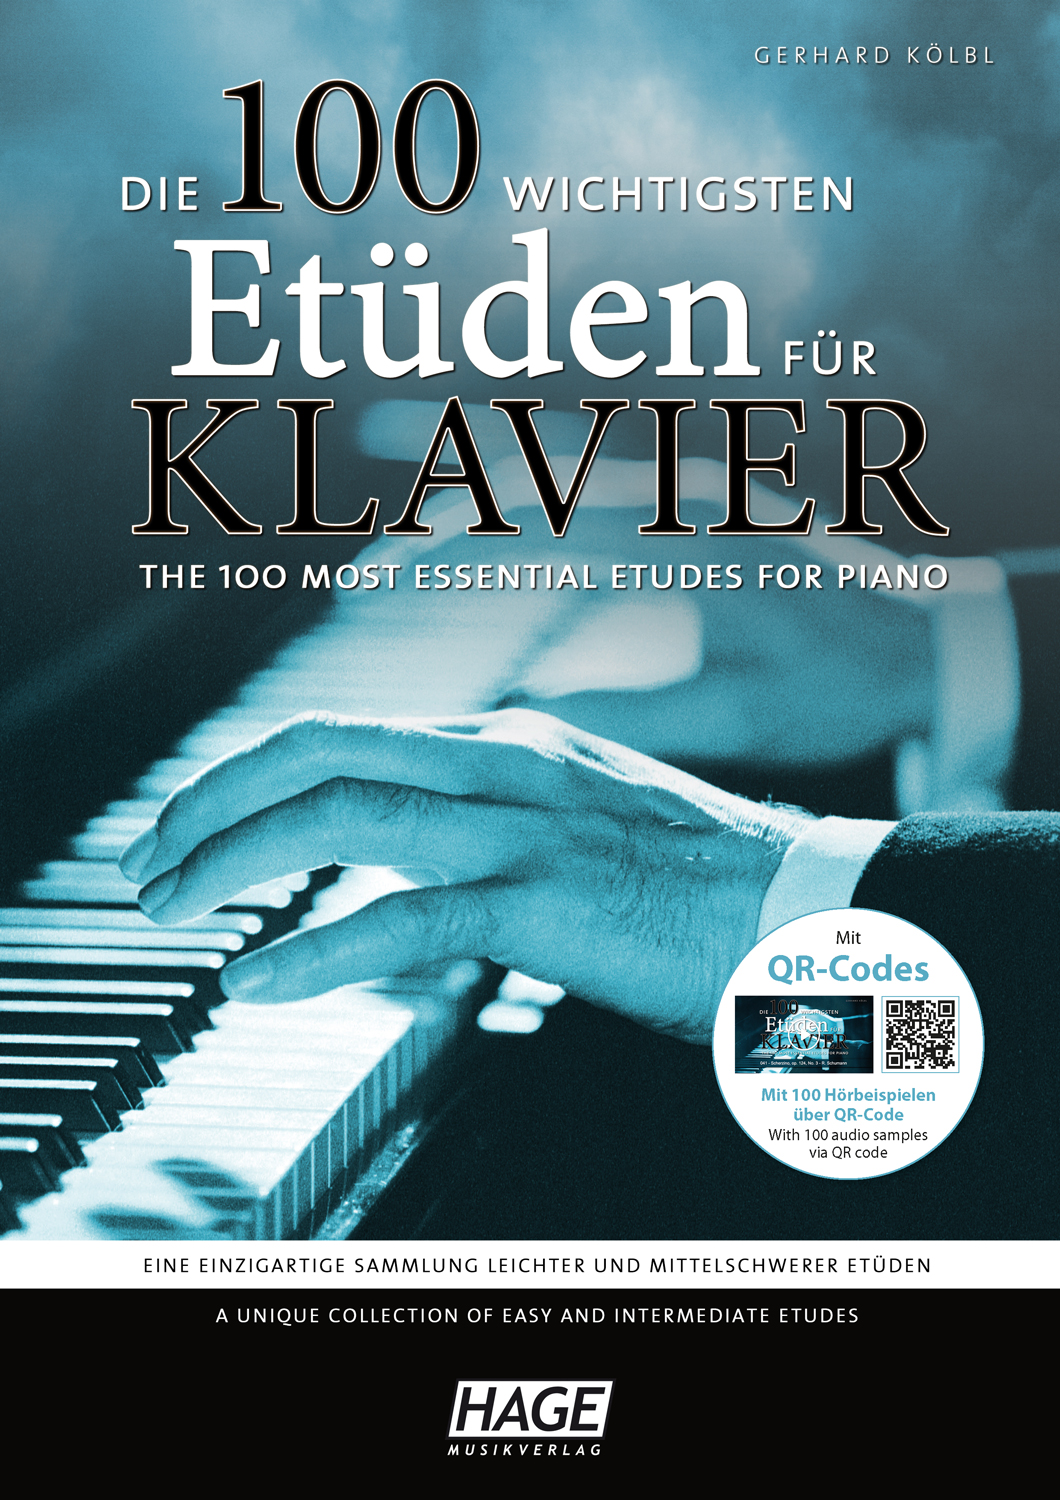 Die 100 wichtigsten Etüden für Klavier